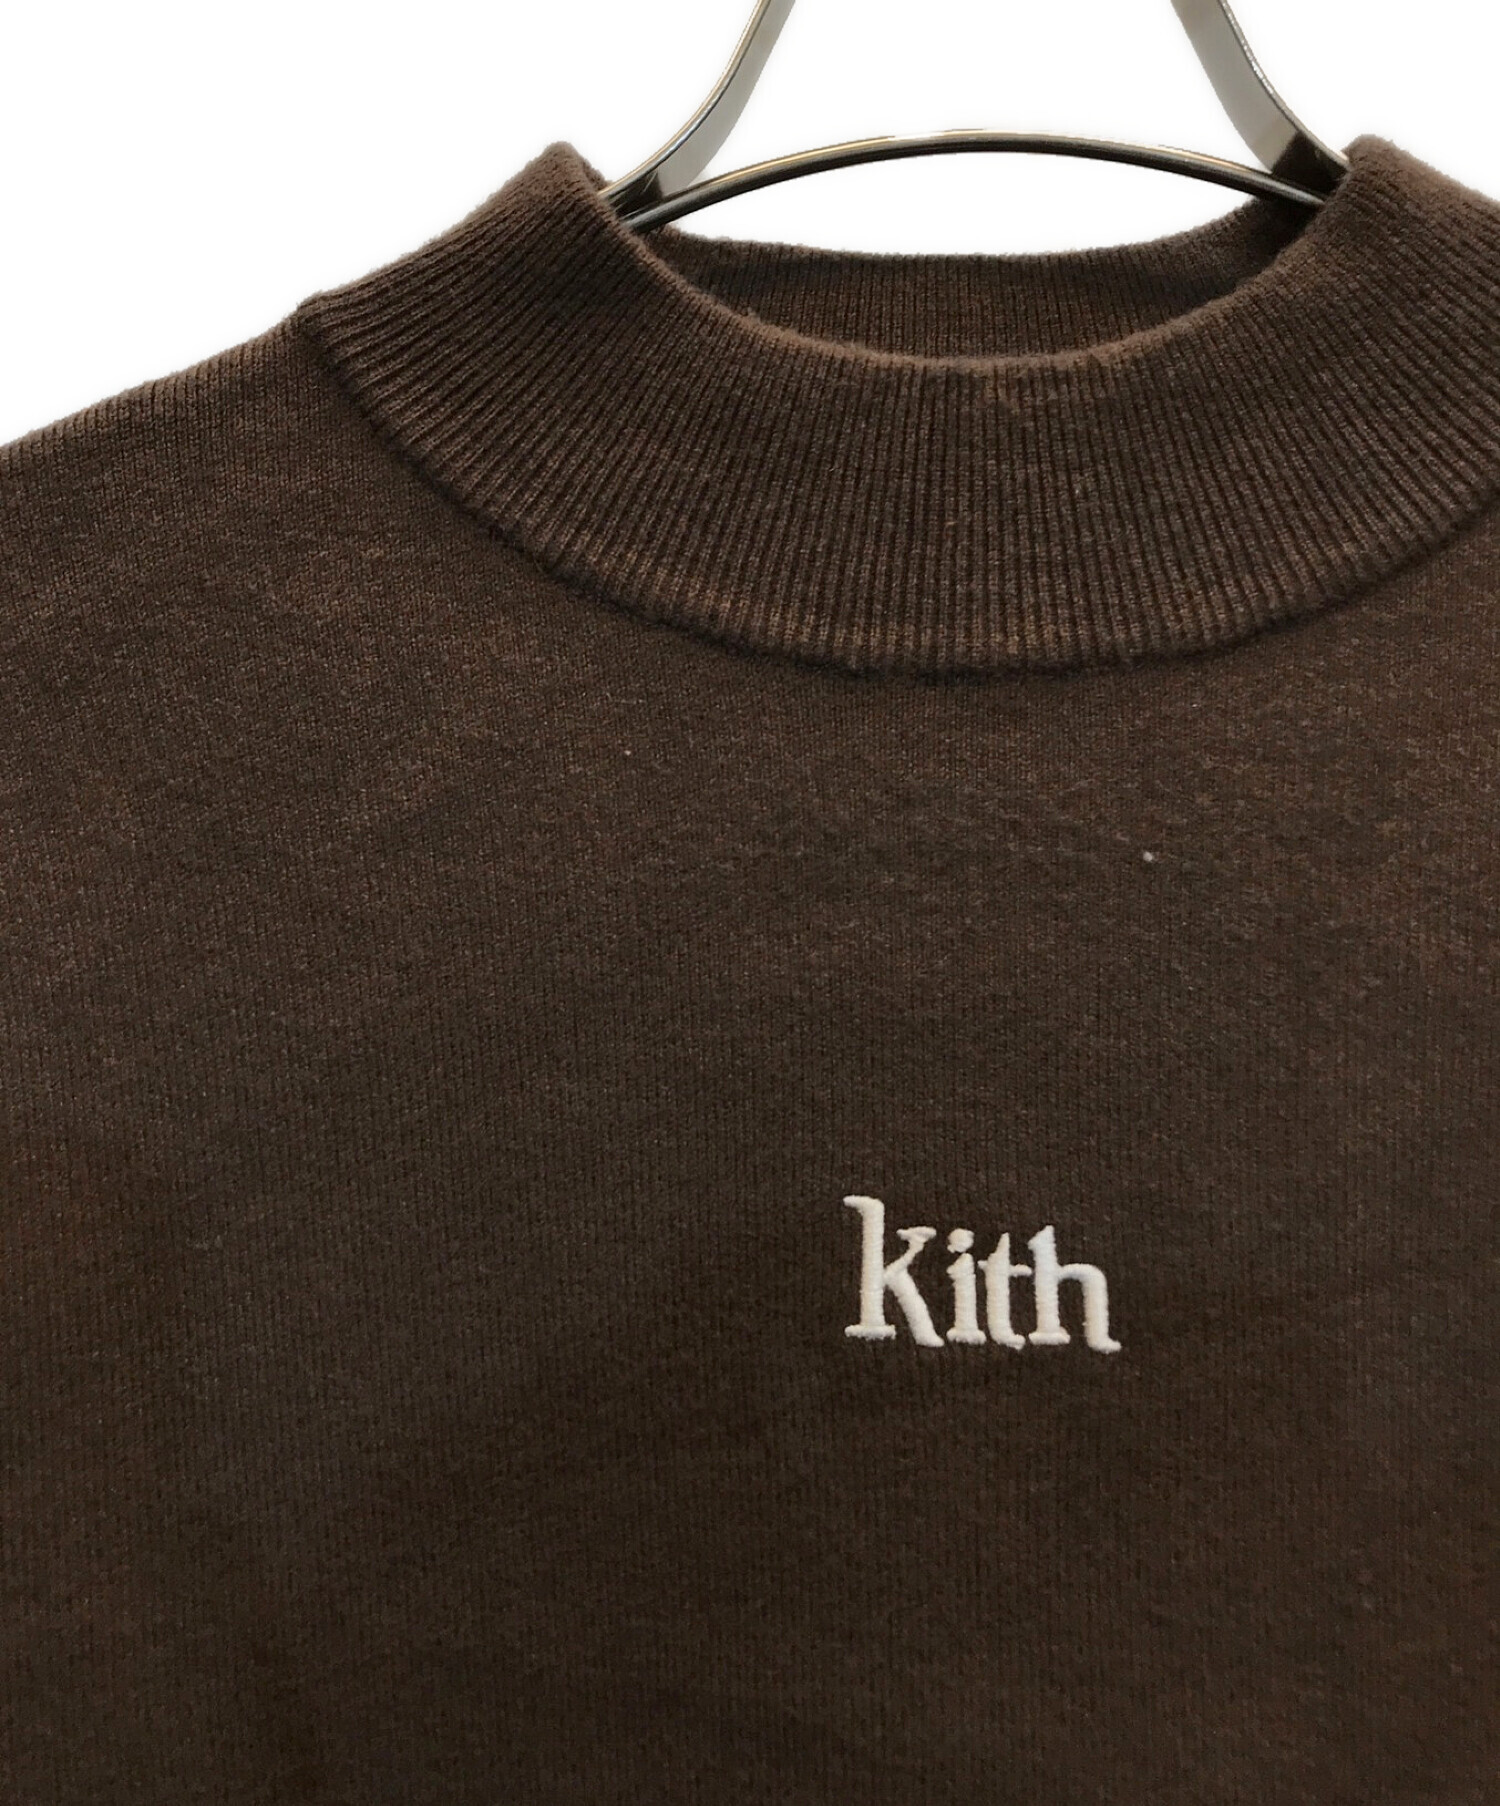 KITH (キス) L/S Mockneck Knit　ロゴ刺繍モックネックニット ブラウン サイズ:M